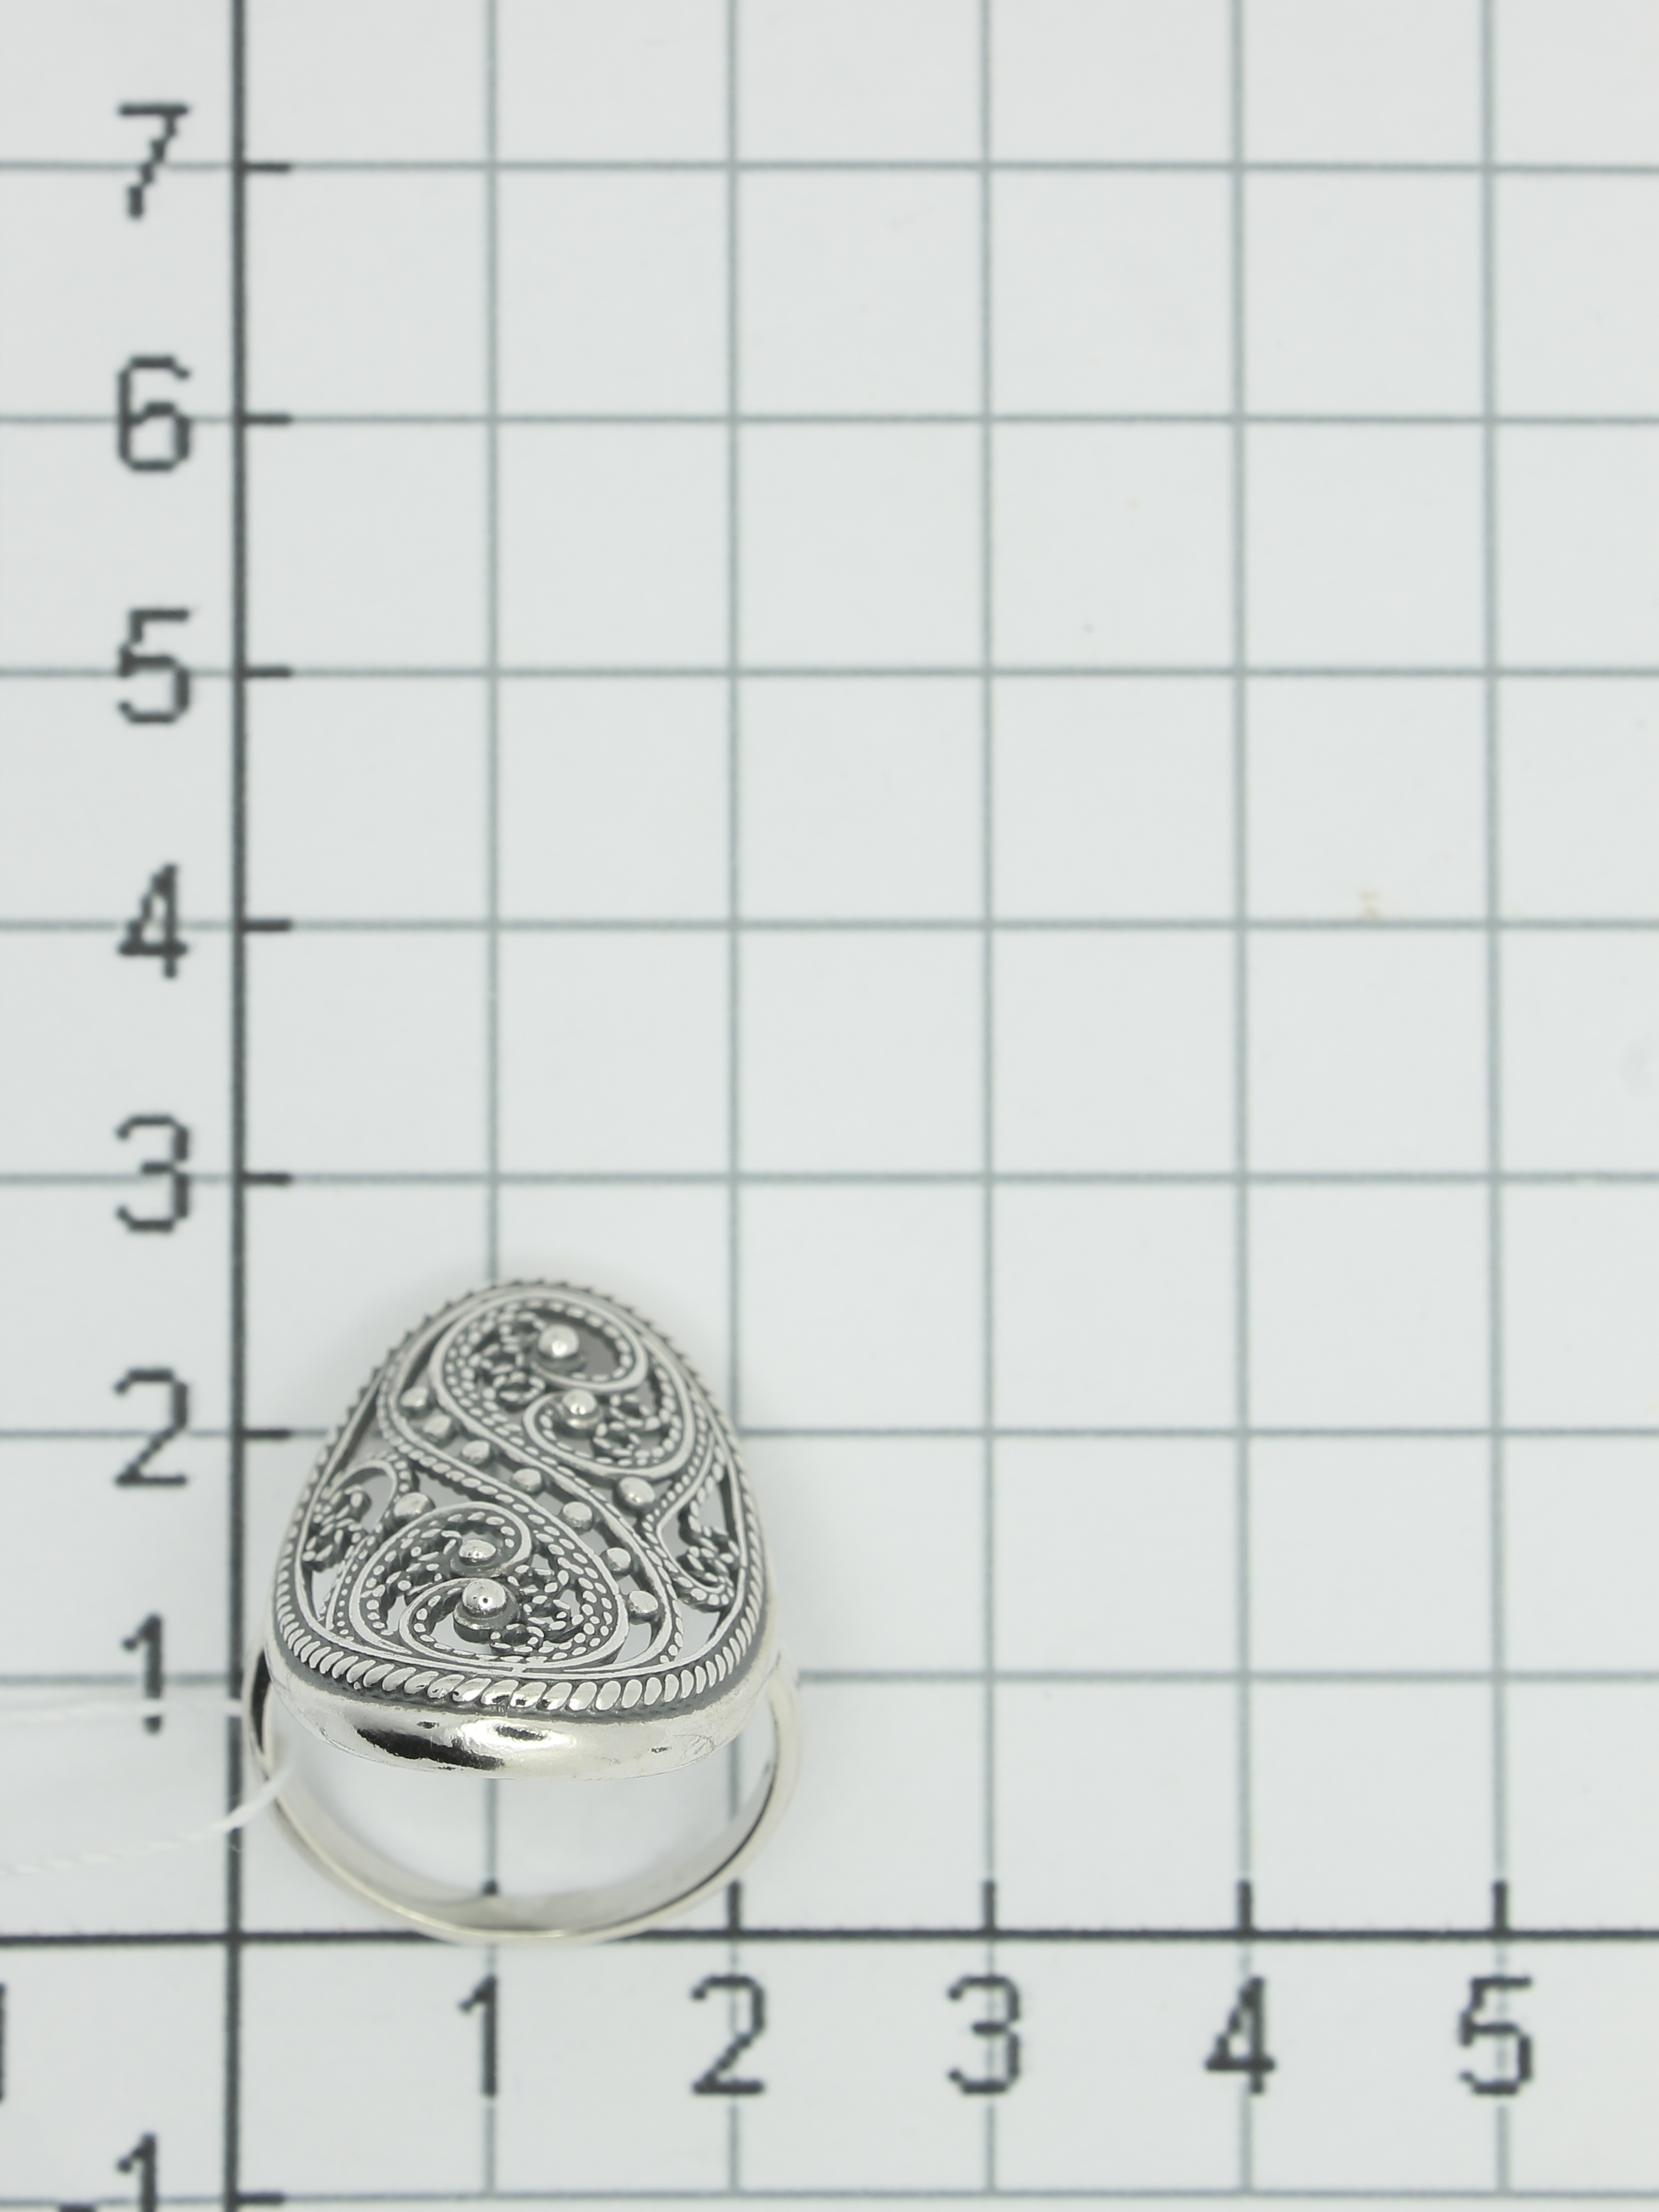 Кольцо из серебра (арт. 2129515)